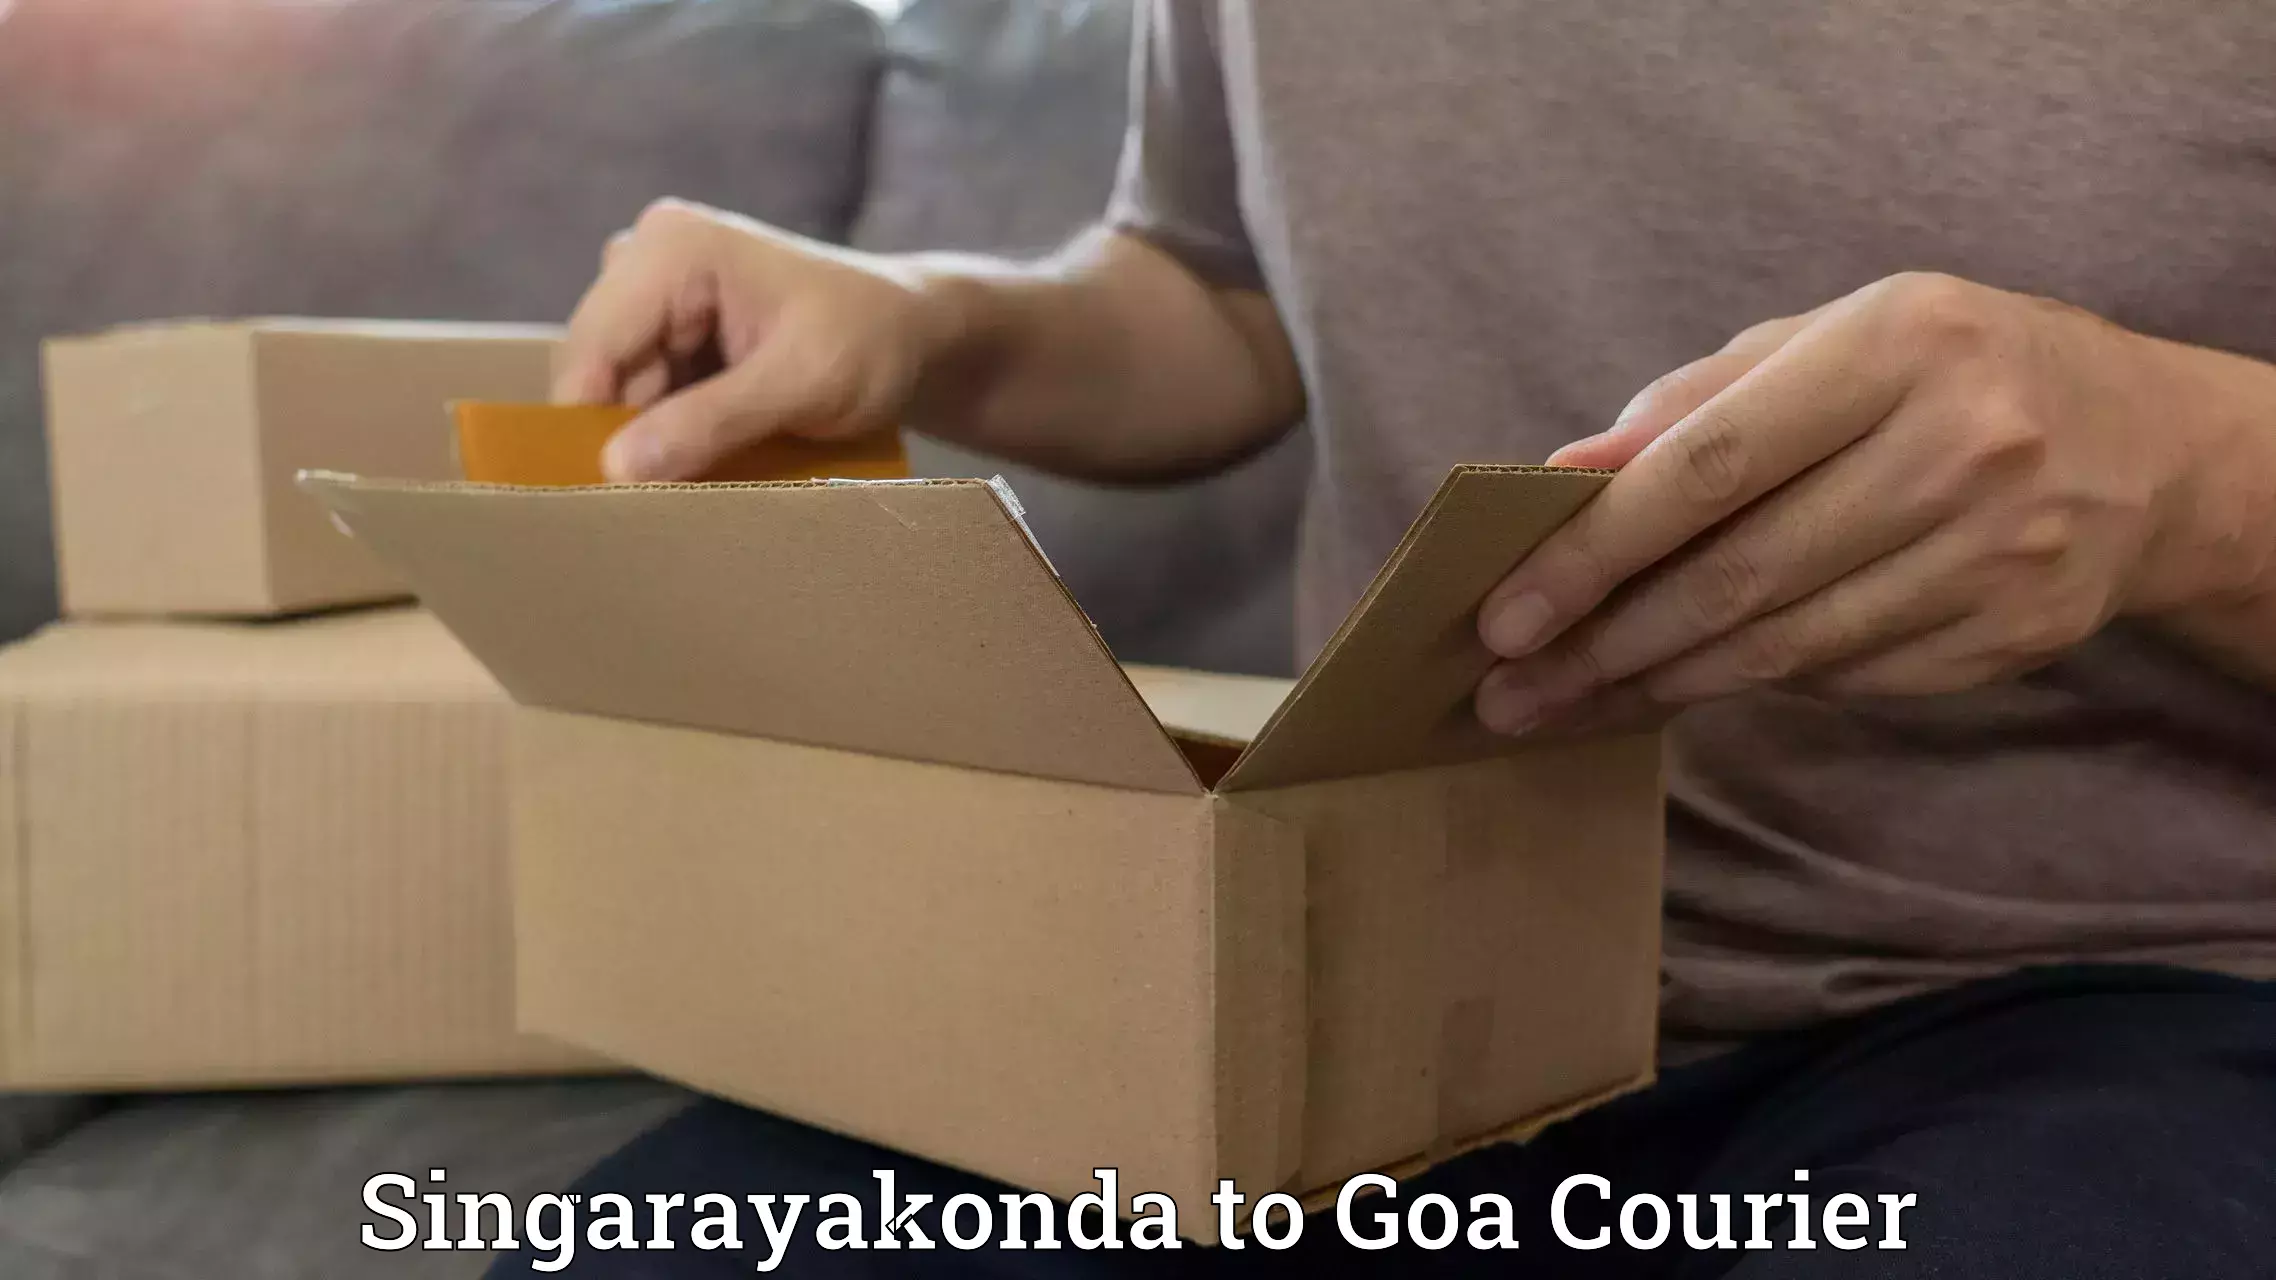 Efficient parcel delivery Singarayakonda to Panaji